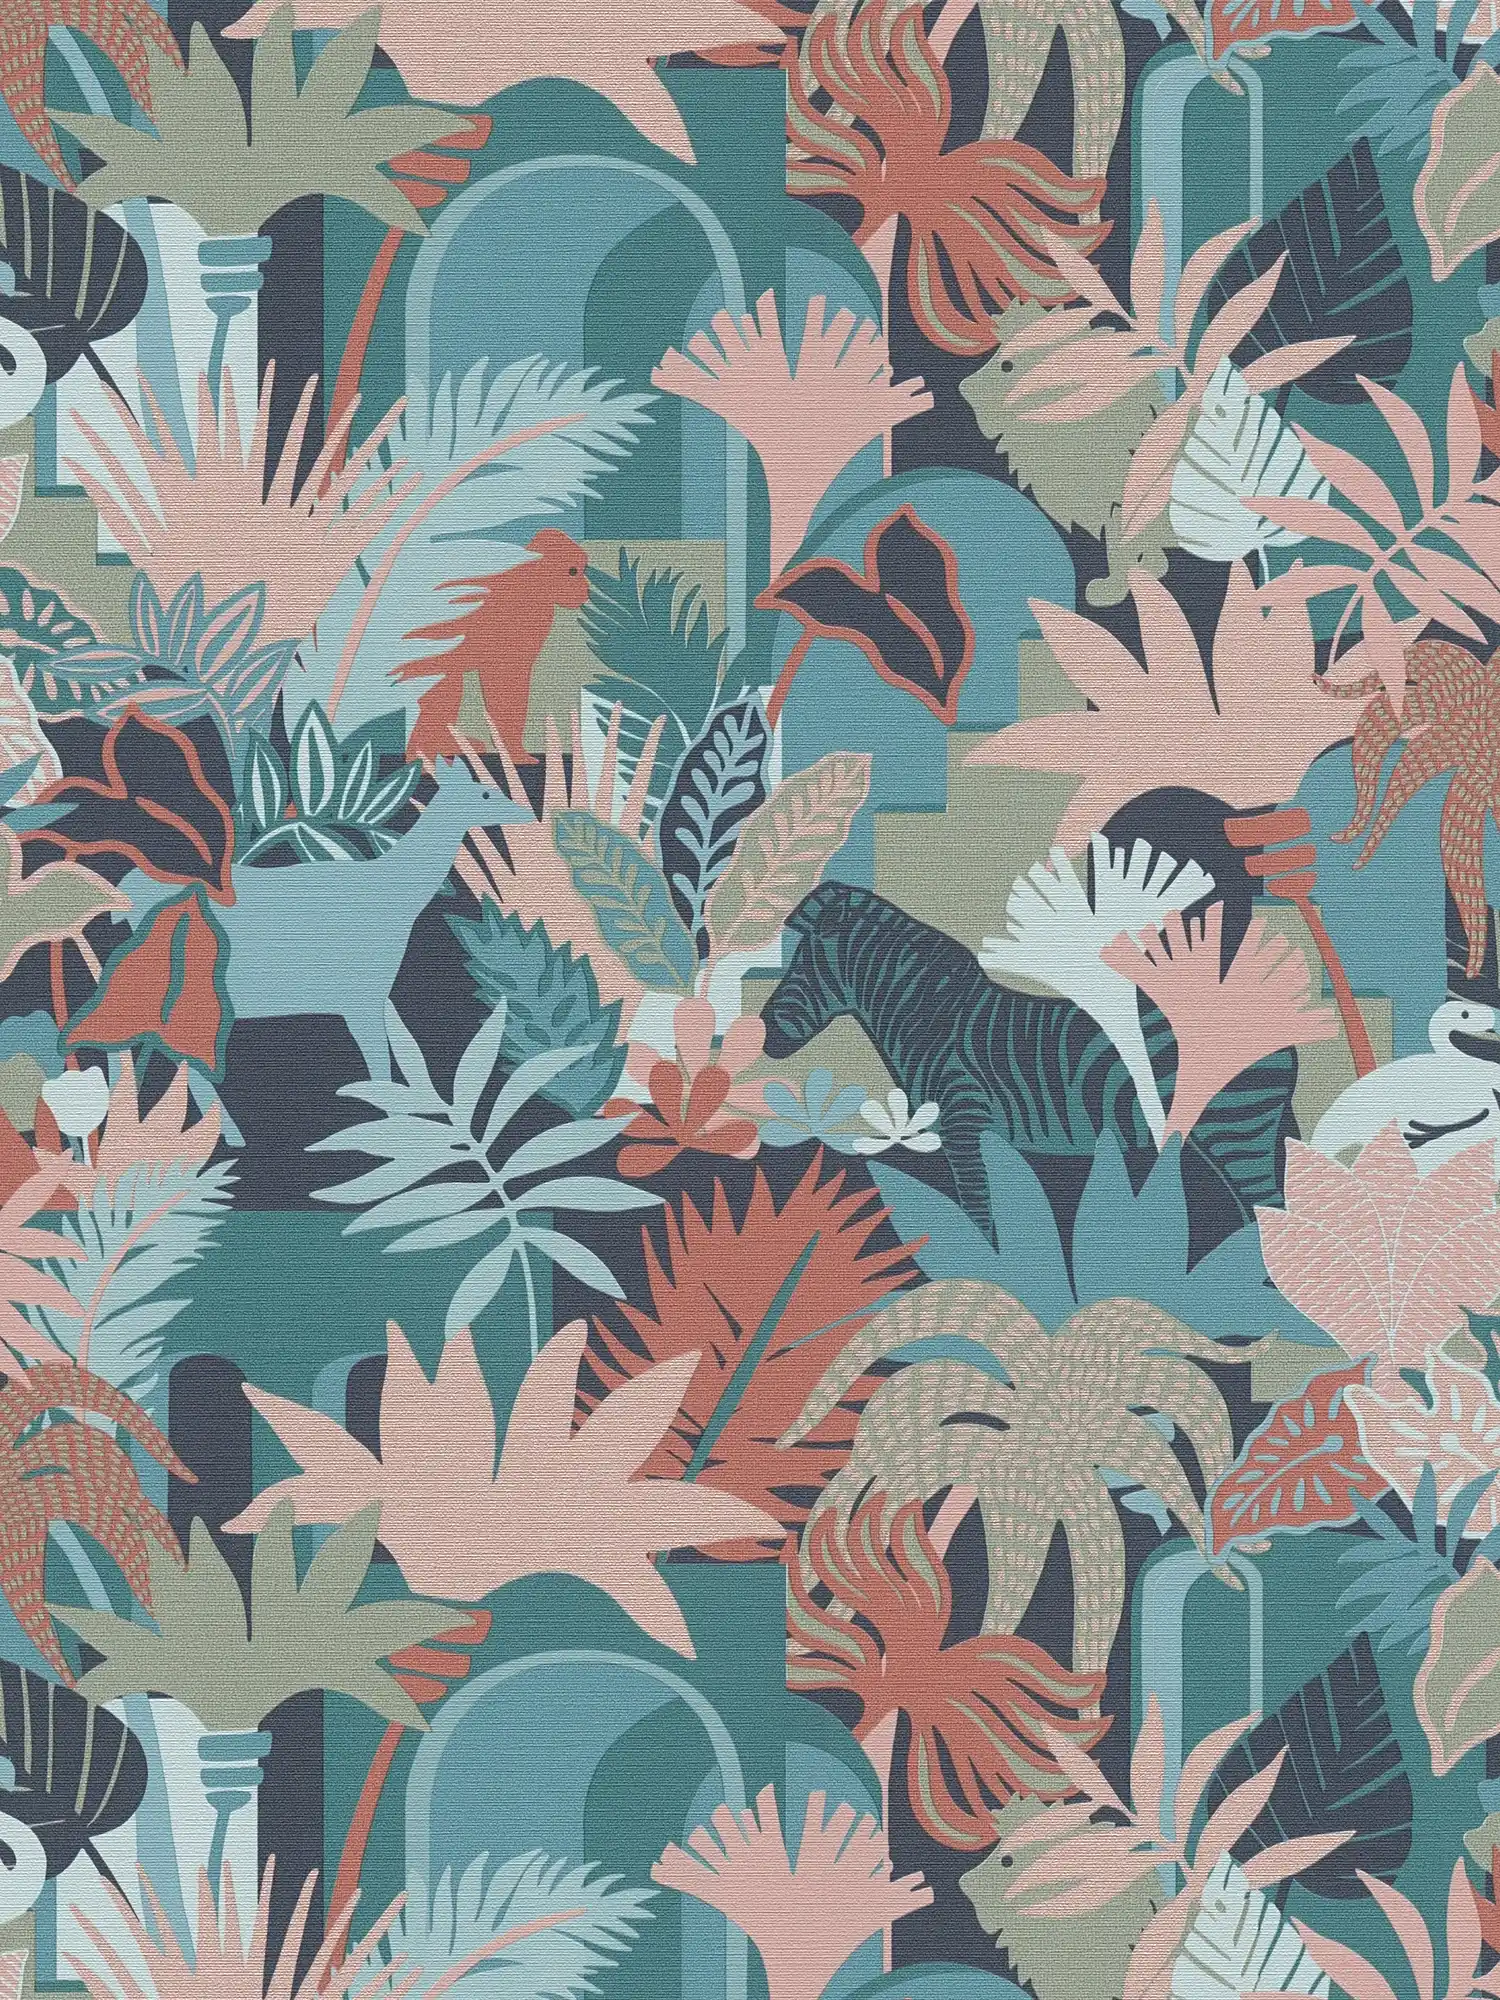         Papier peint intissé imitation jungle avec animaux - multicolore, vert, bleu
    